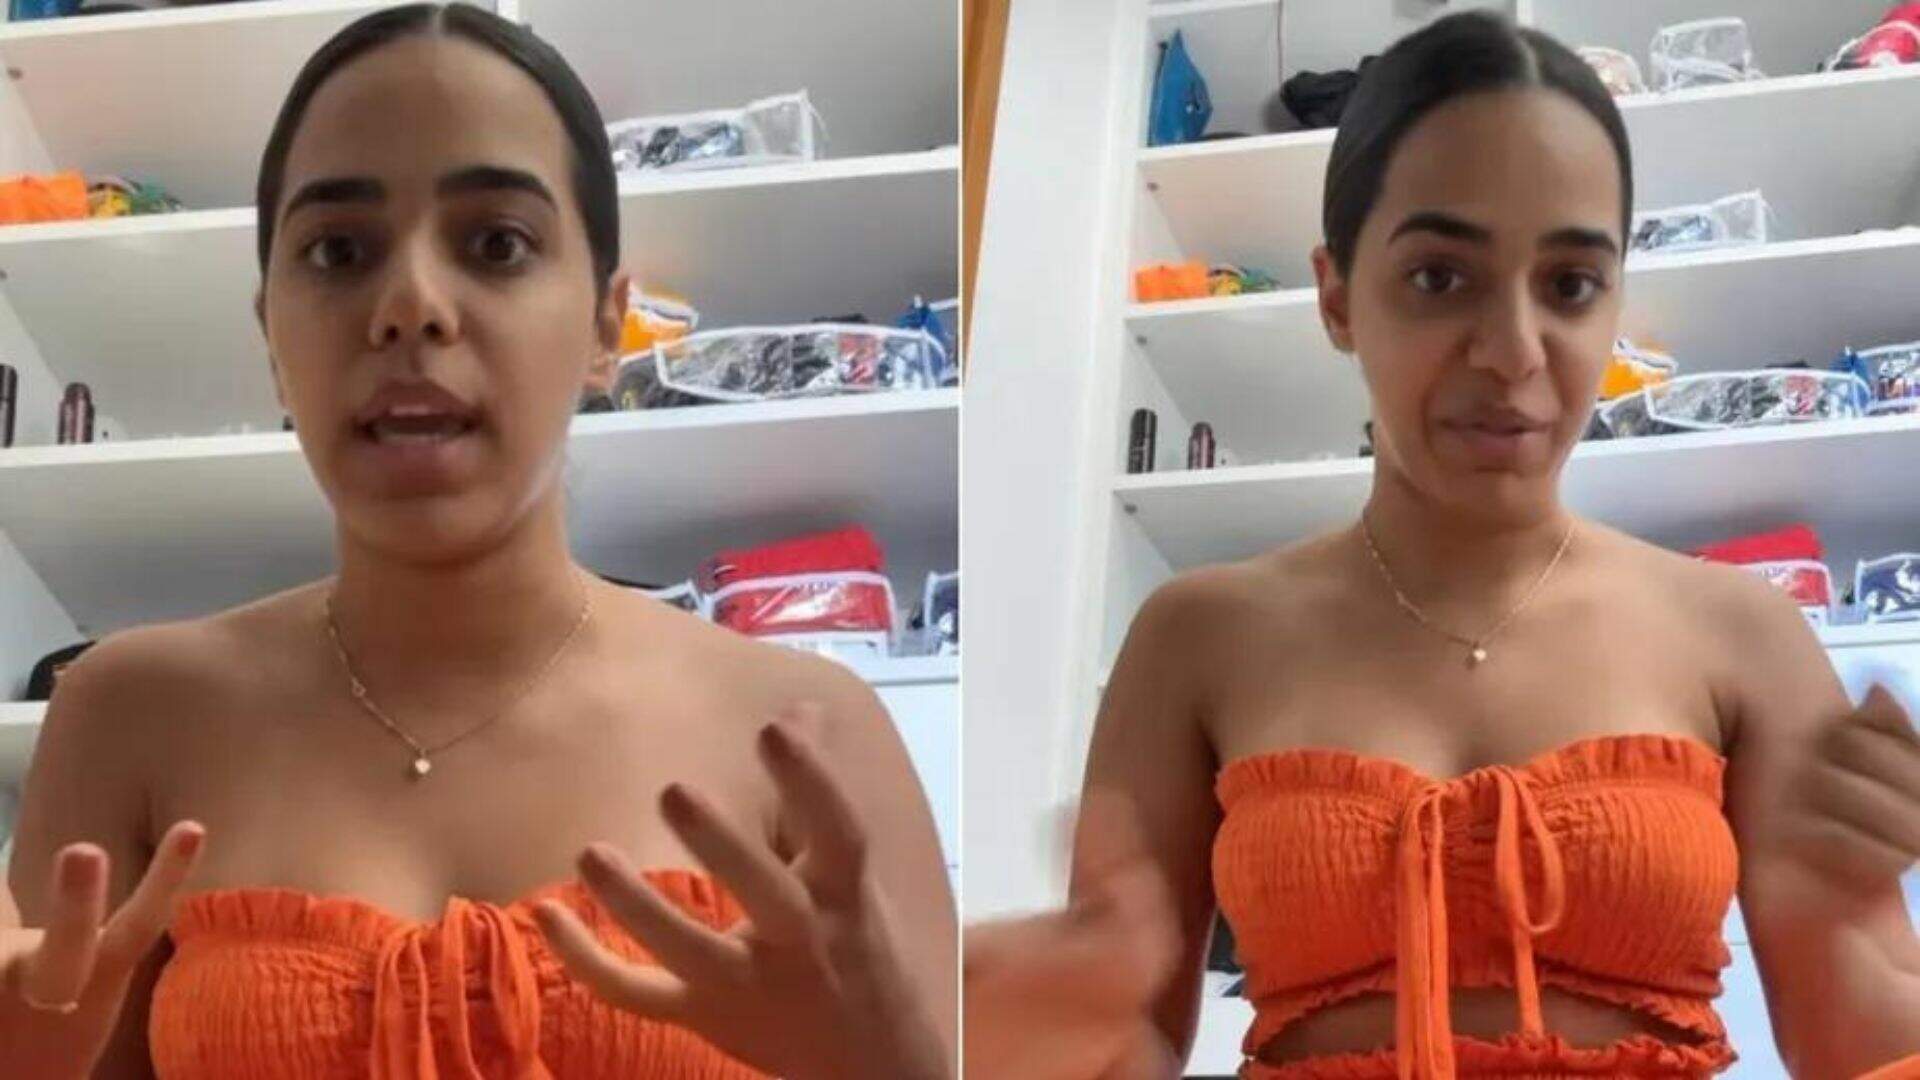 Mirella Santos perde a paciência com comentários e rasga o verbo ao defender sua mãe: “Luxo?” - Metropolitana FM